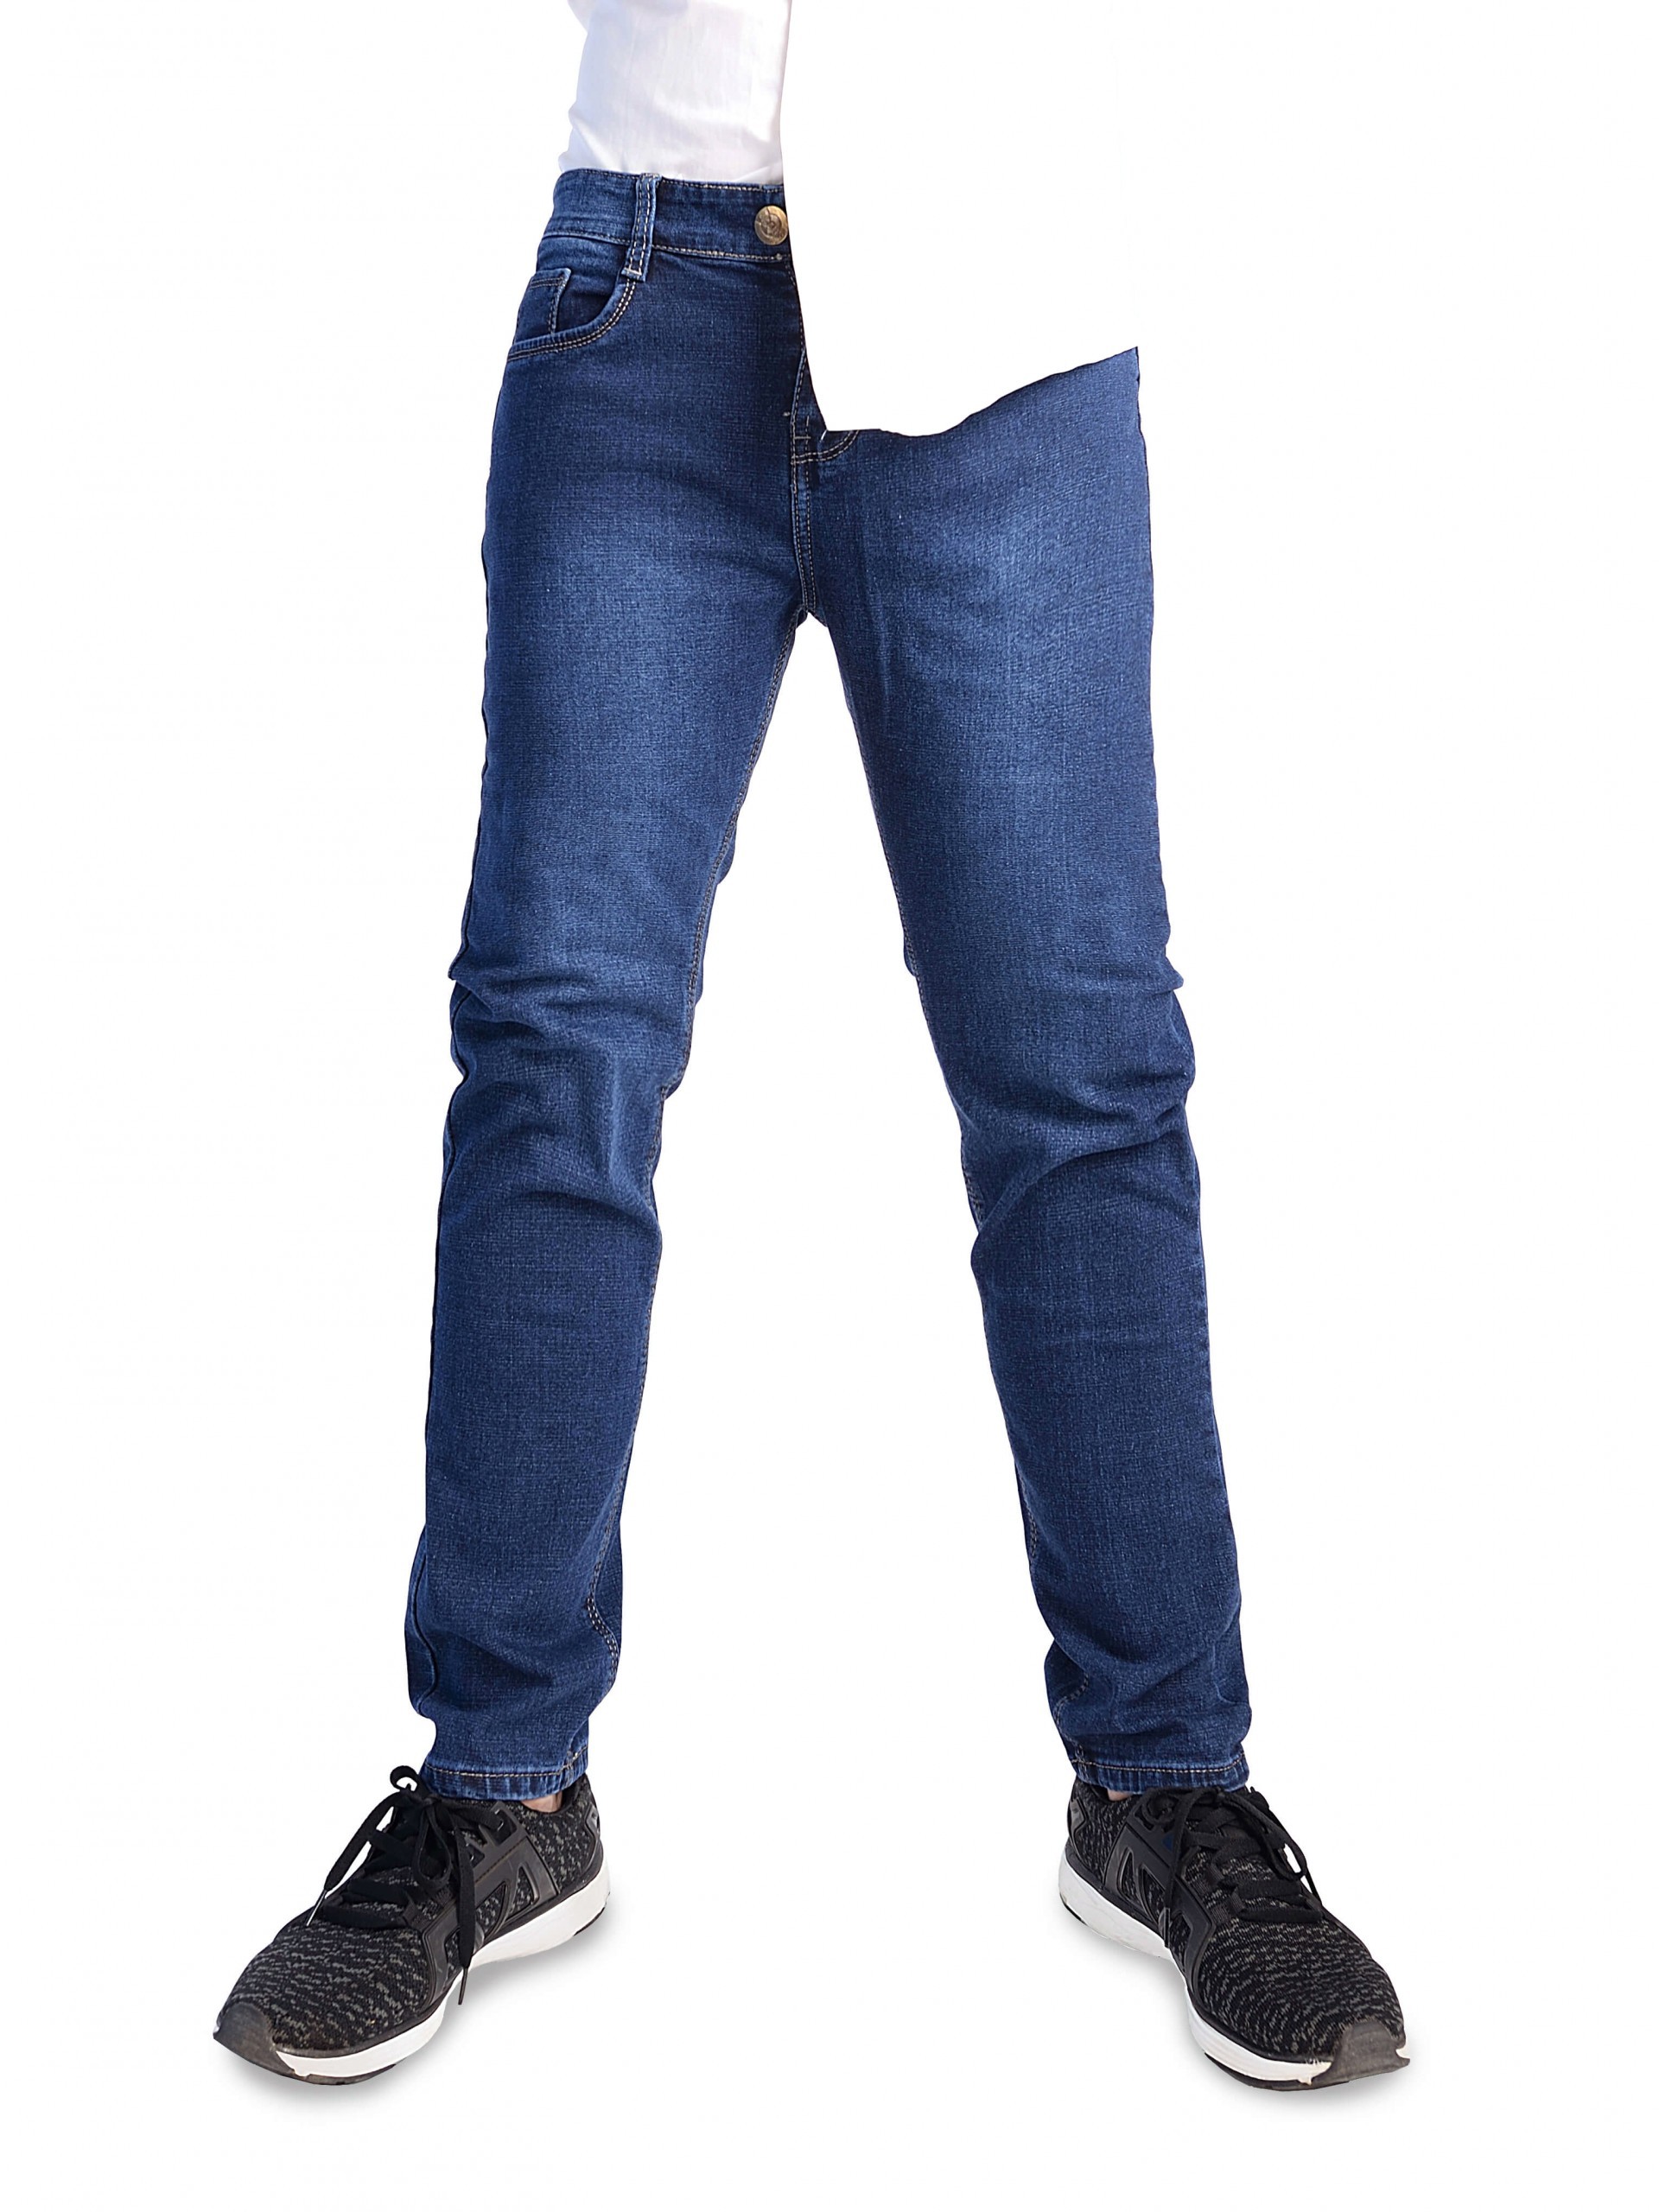 Jeans nam body phù hợp cho dáng người như thế nào?